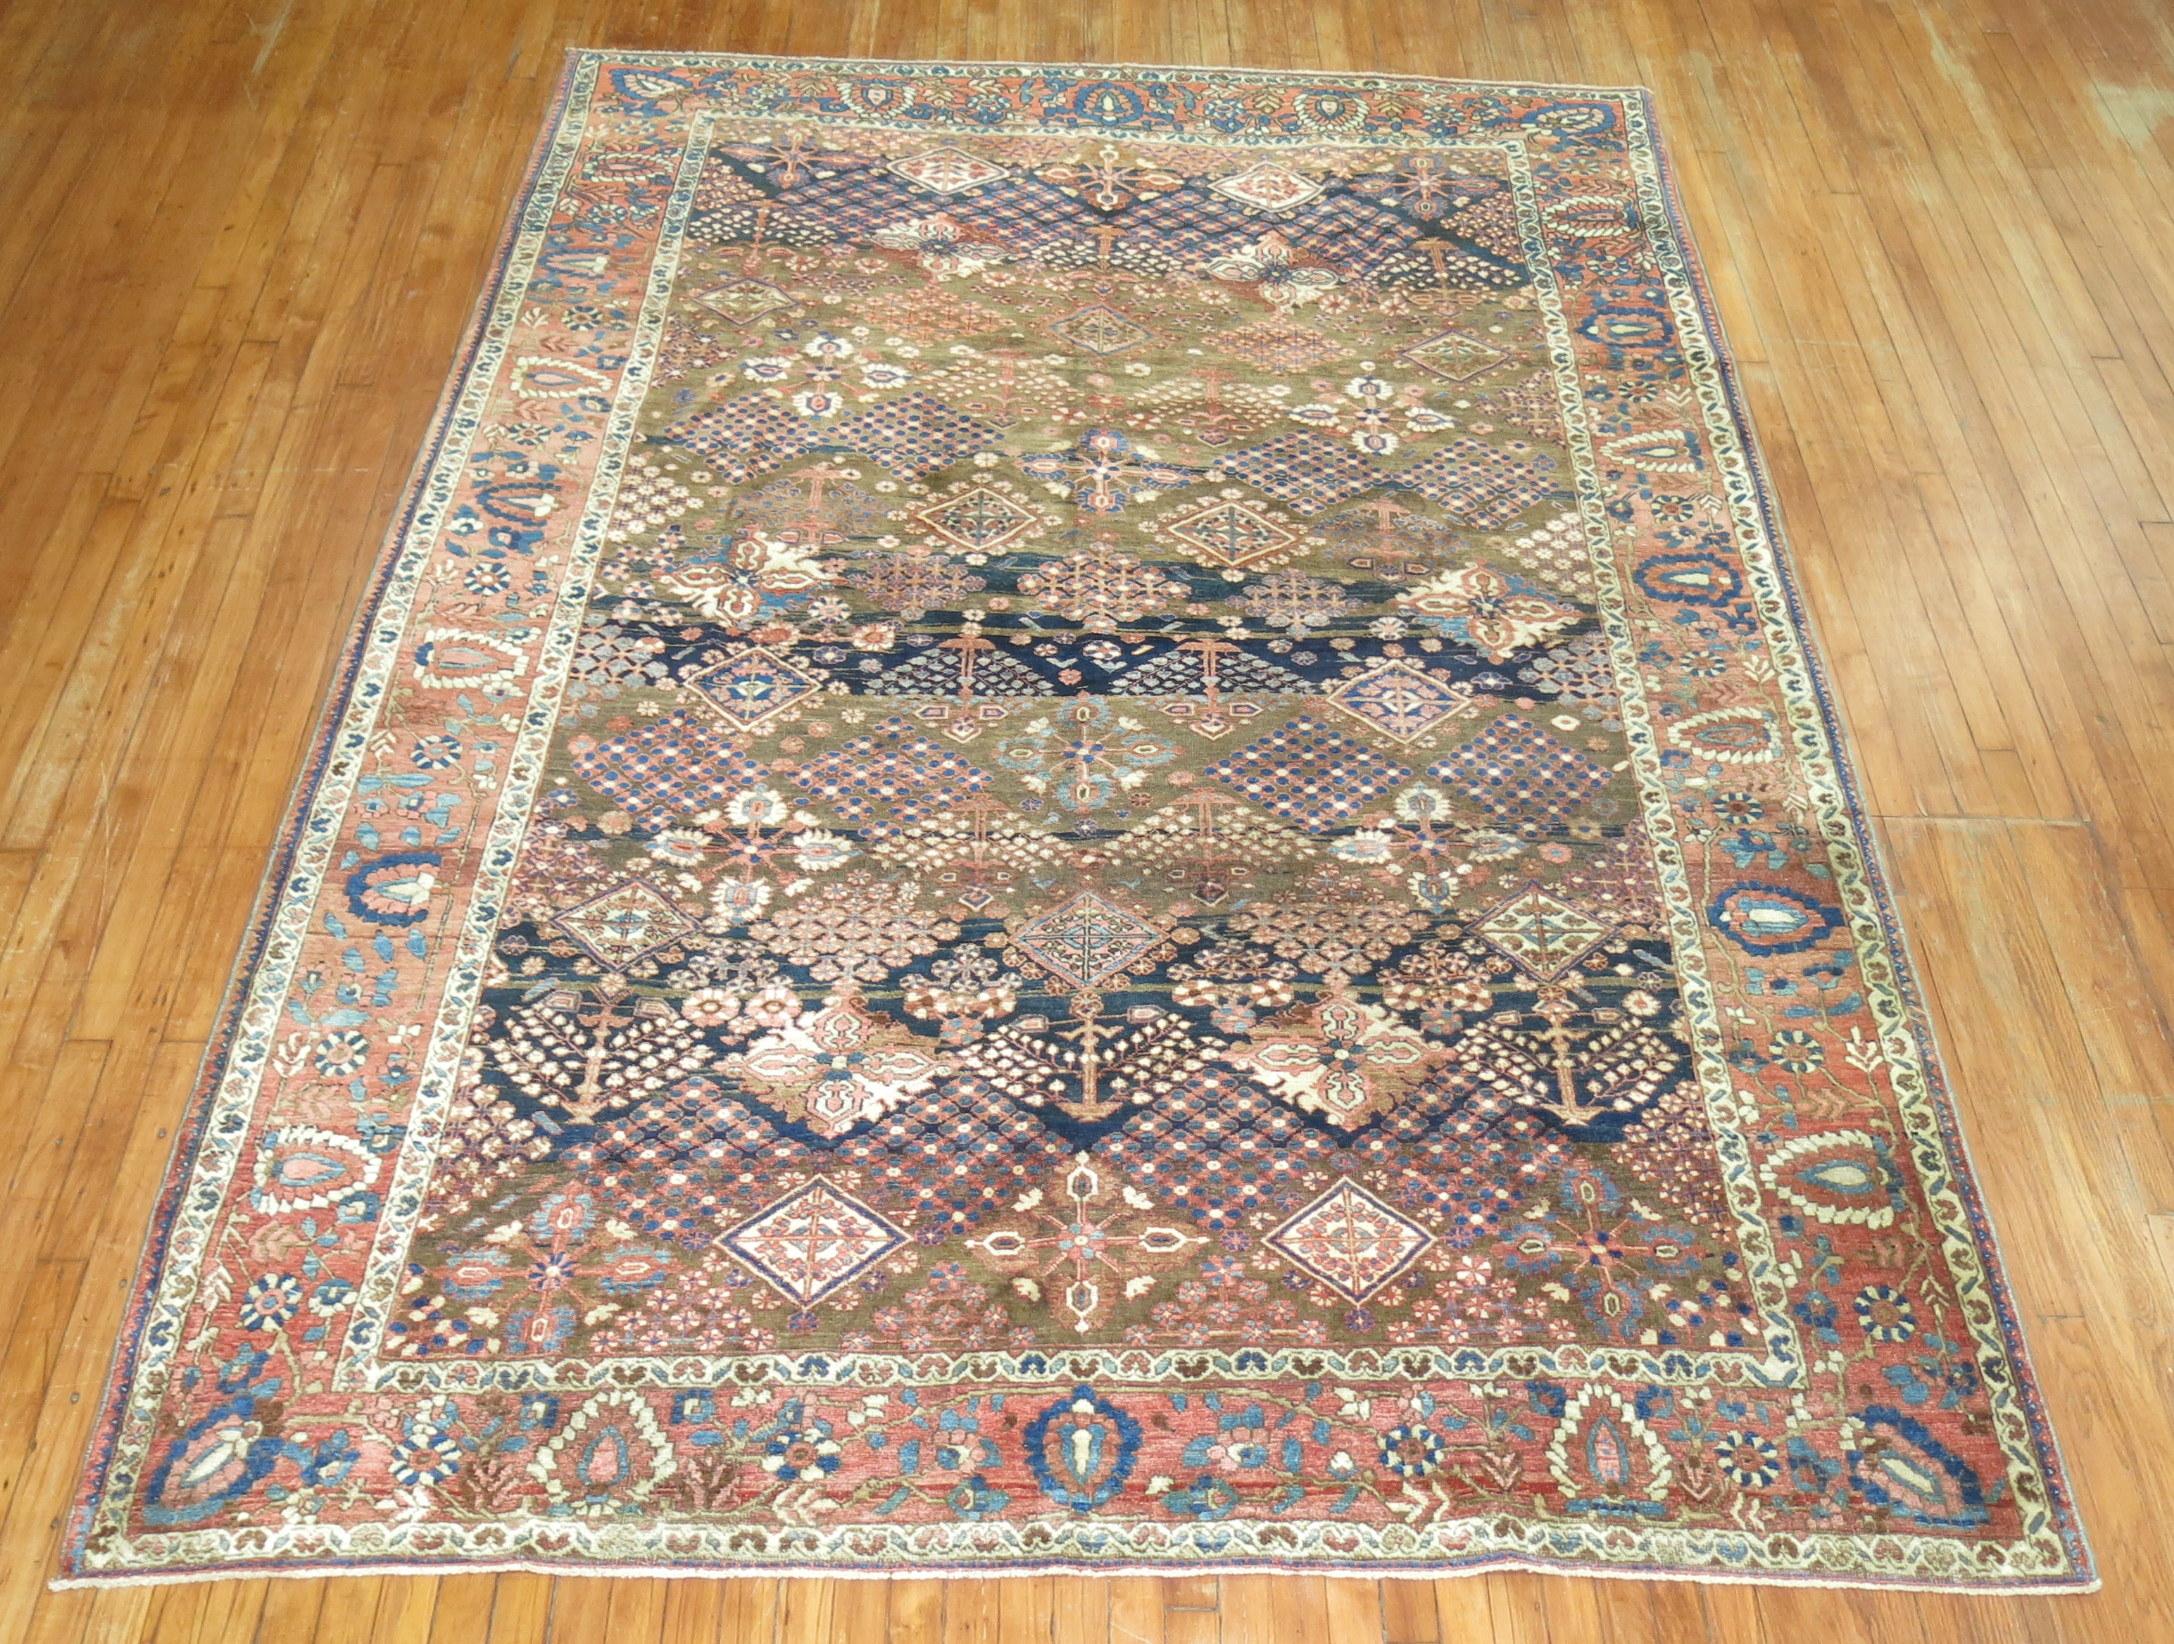 A traditional rustic color Persian Bakhtiari room size rug,

circa 1940. Measures: 7' x 10'.